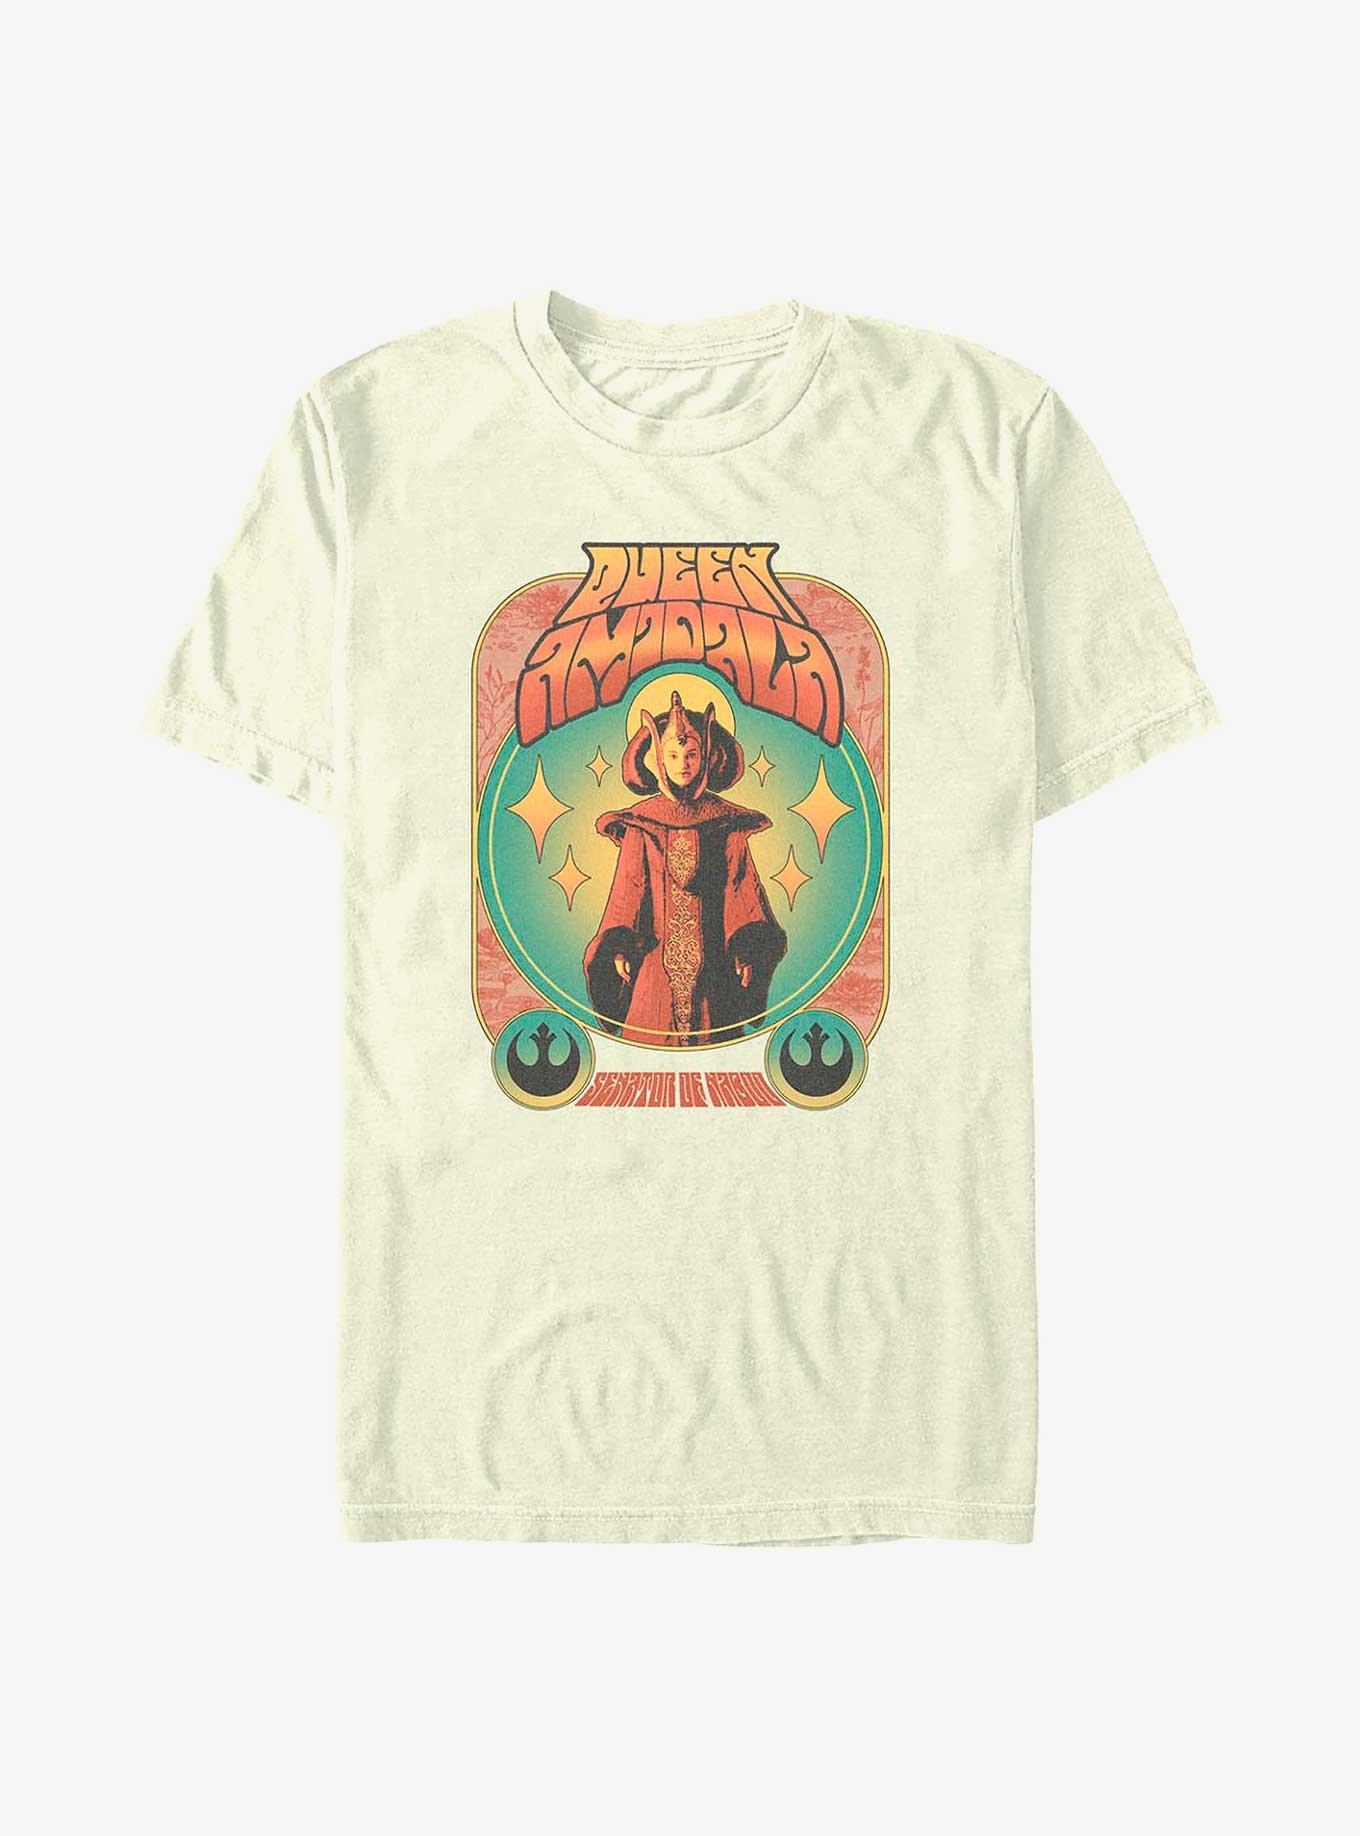 Star Wars Queen Amidala T-Shirt, NATURAL, hi-res